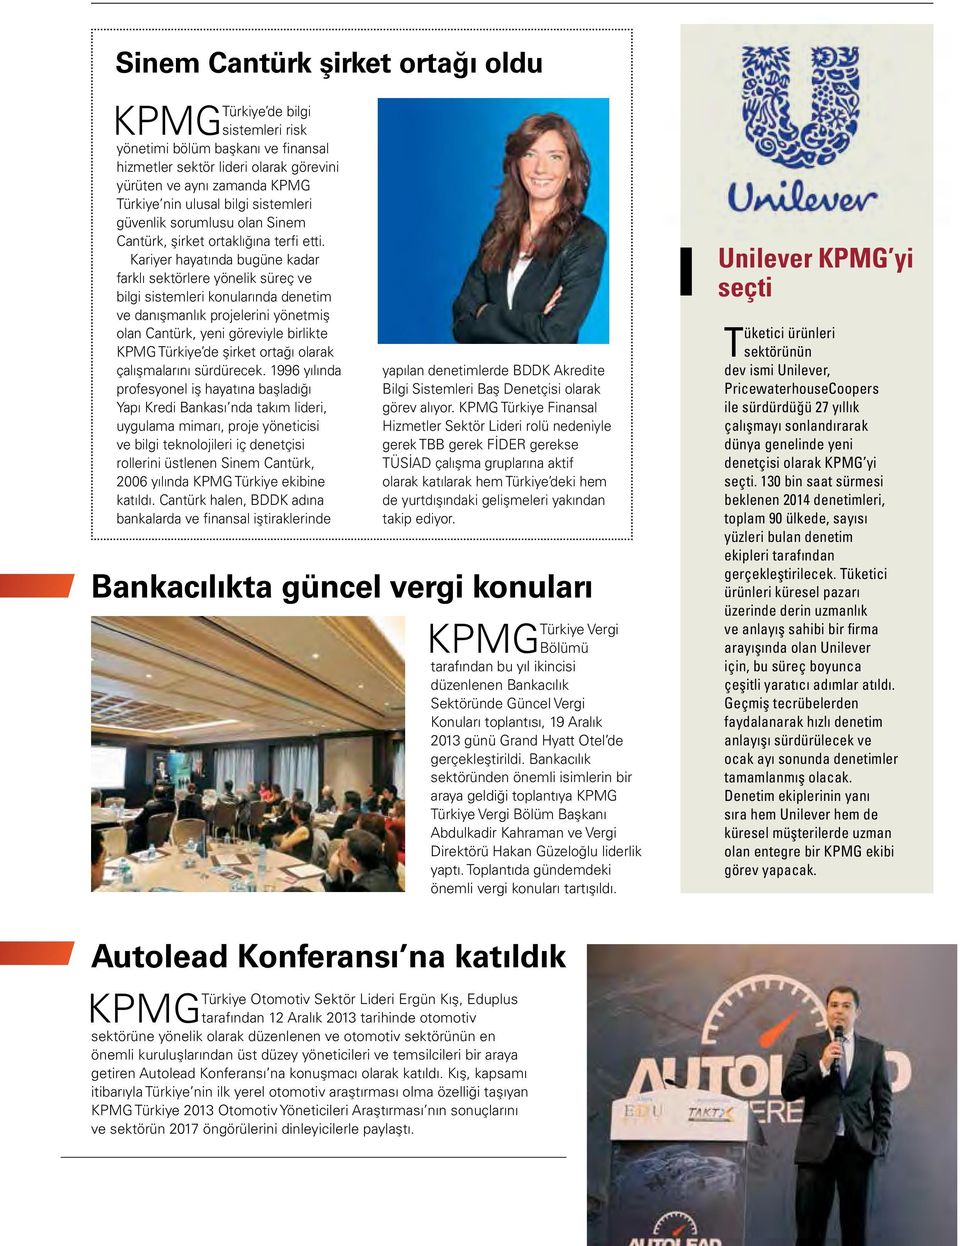 Kariyer hayatında bugüne kadar farklı sektörlere yönelik süreç ve bilgi sistemleri konularında denetim ve danışmanlık projelerini yönetmiş olan Cantürk, yeni göreviyle birlikte KPMG Türkiye de şirket